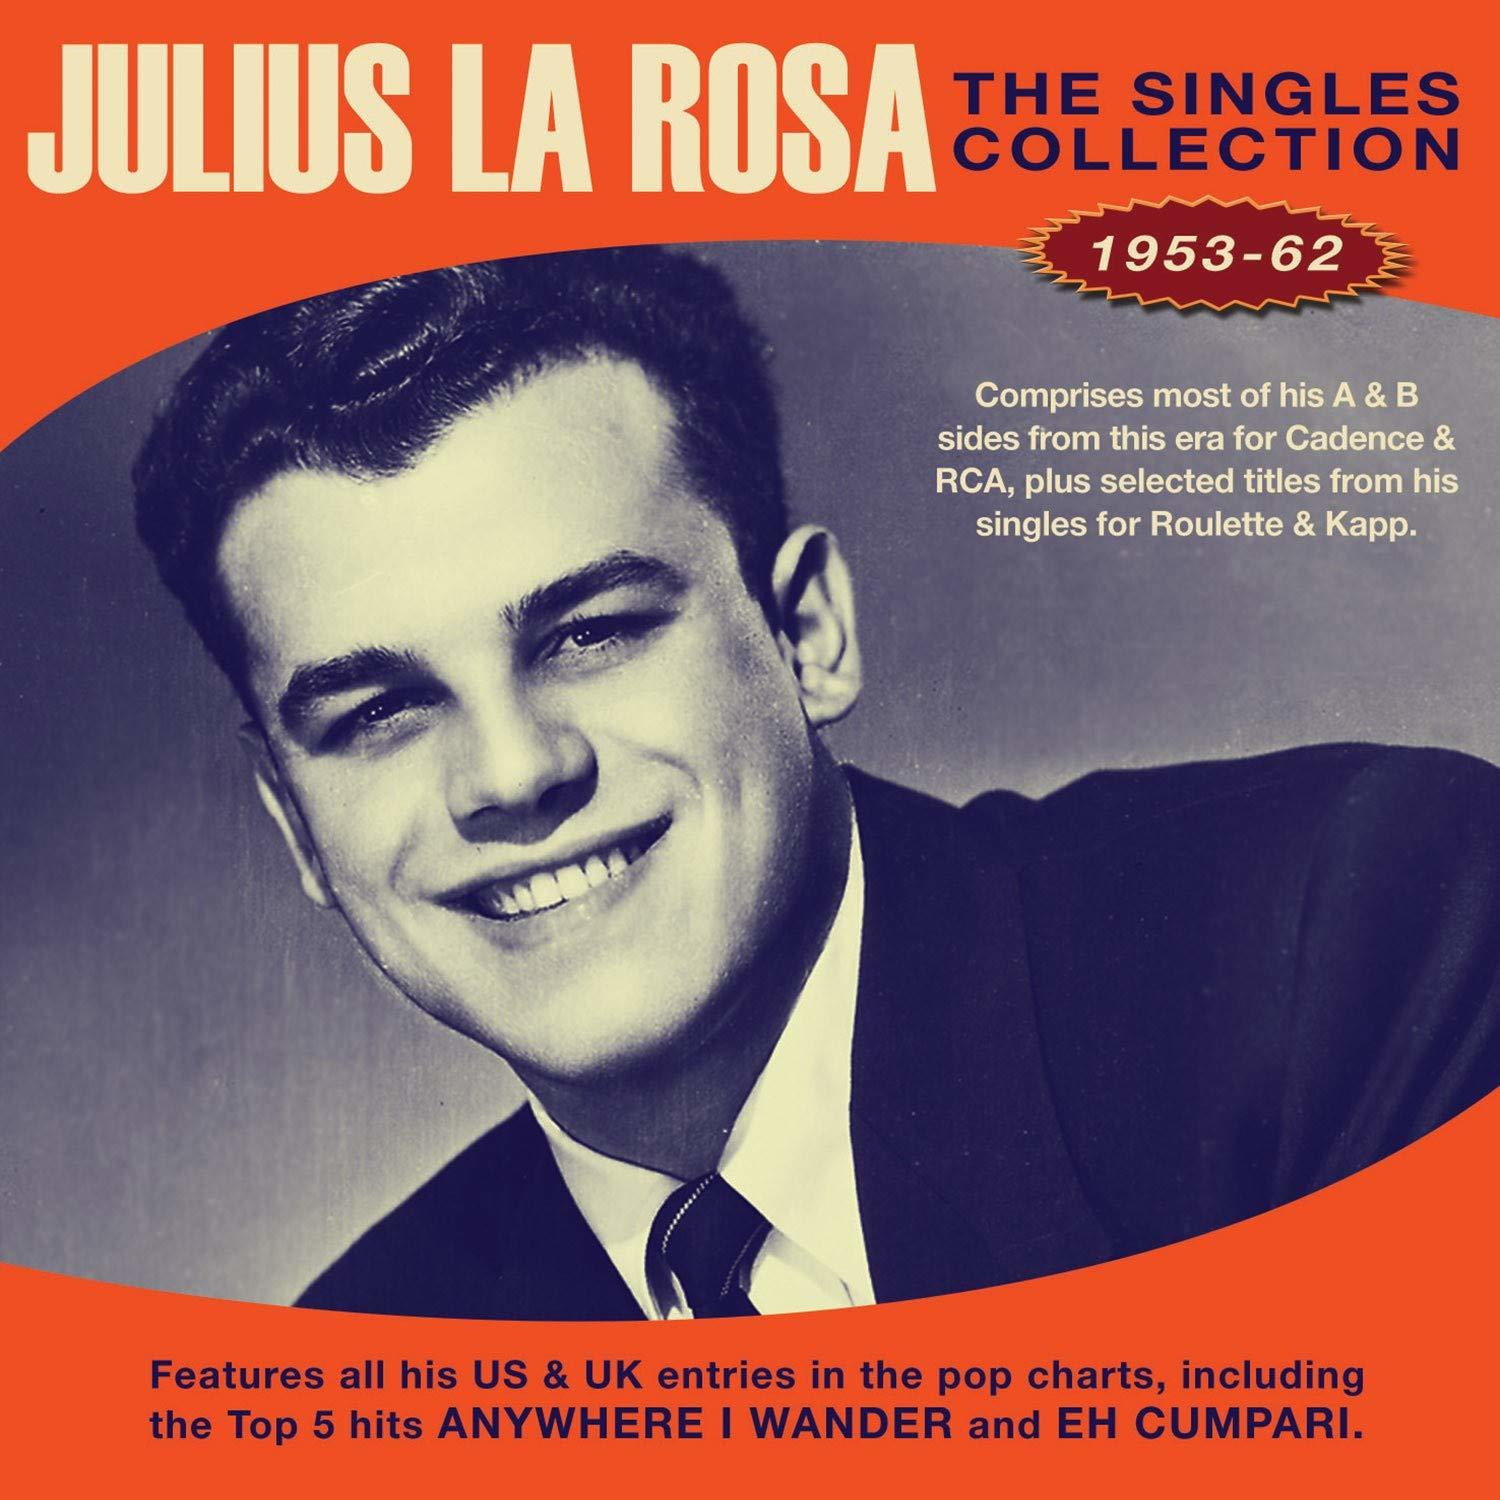 Singles - (CD) - Rosa The Julius La 1953-1962 Collection